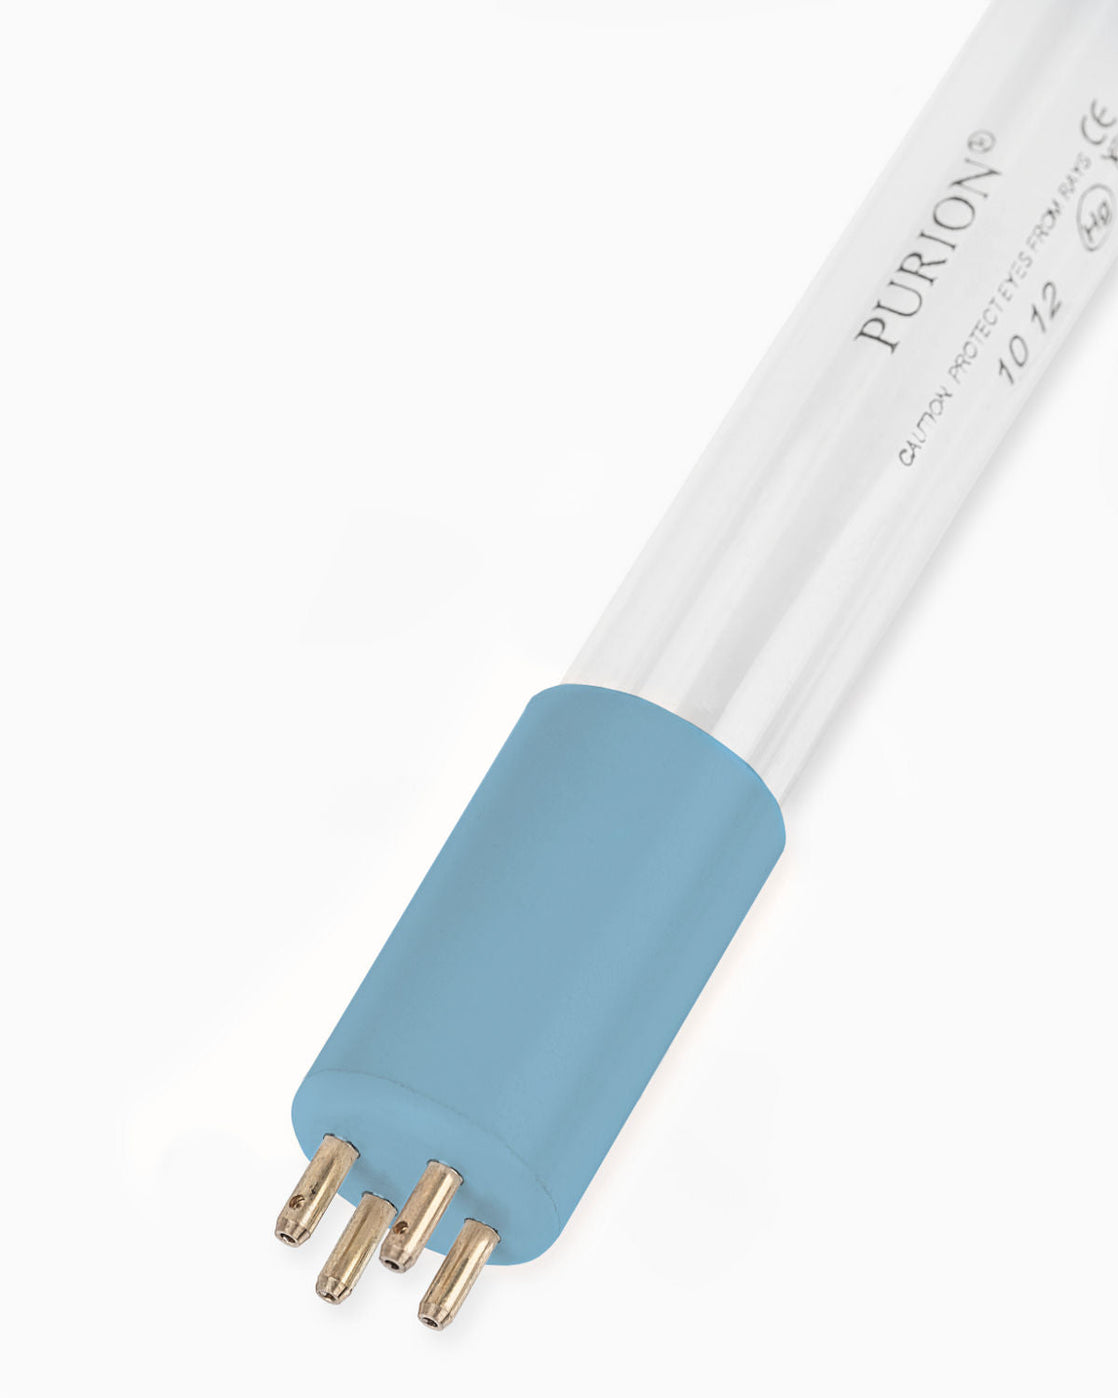 Eine PURION 1000 H ESM Blaulichtröhre mit UV-C-Desinfektion auf weißem Hintergrund.